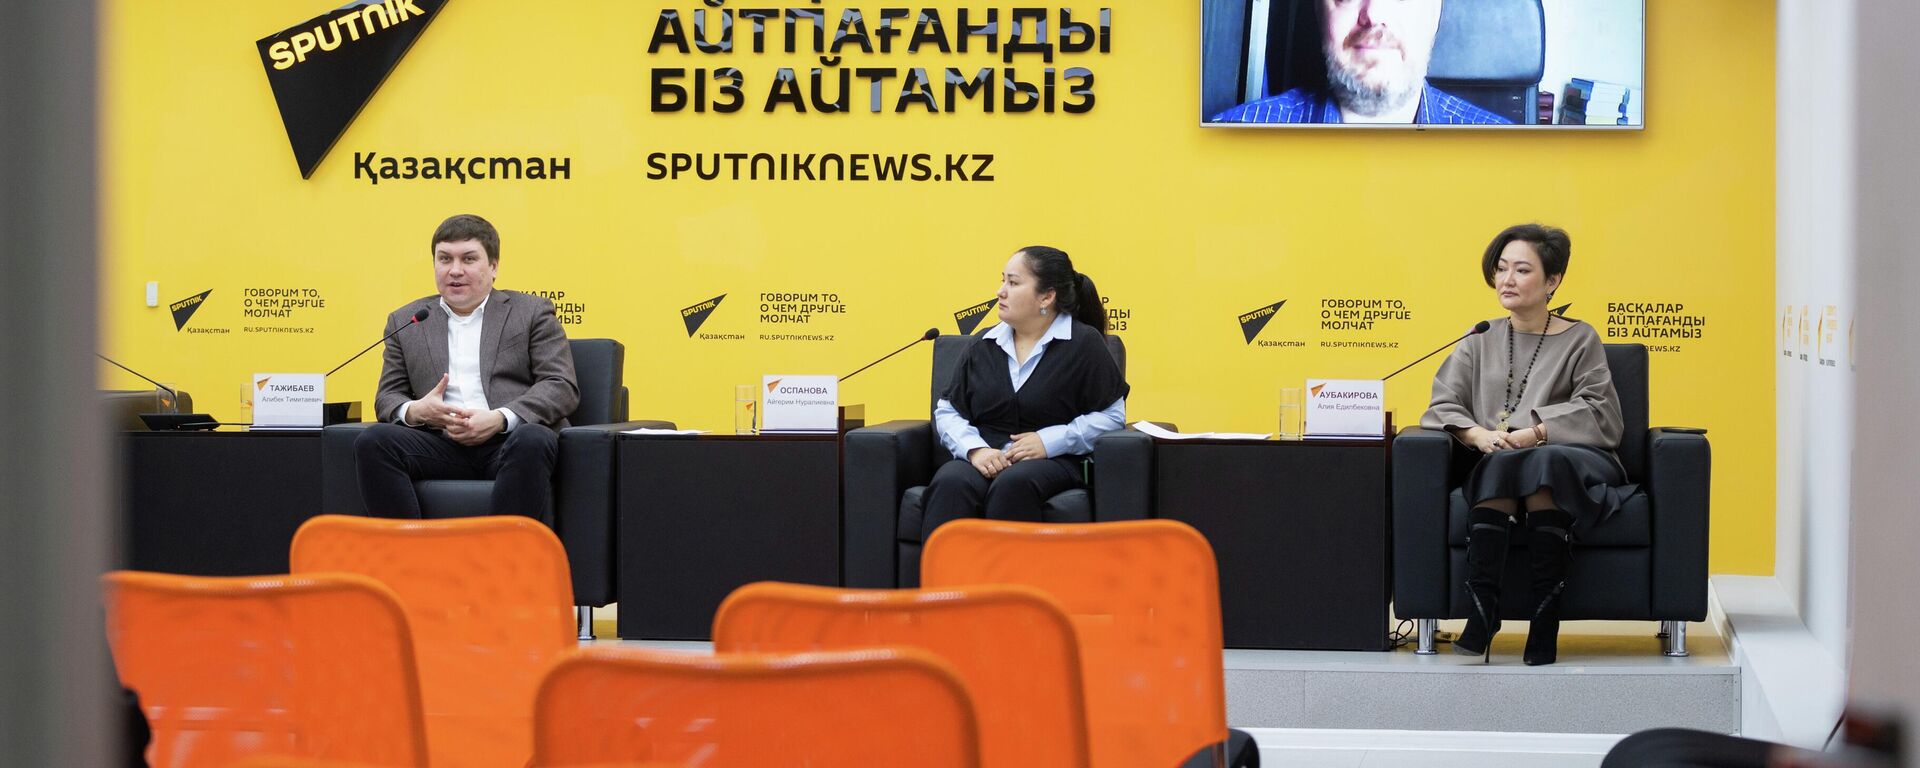 Парламентские выборы 2023: итоги предвыборной кампании обсуждают эксперты - прямой эфир - Sputnik Казахстан, 1920, 17.03.2023